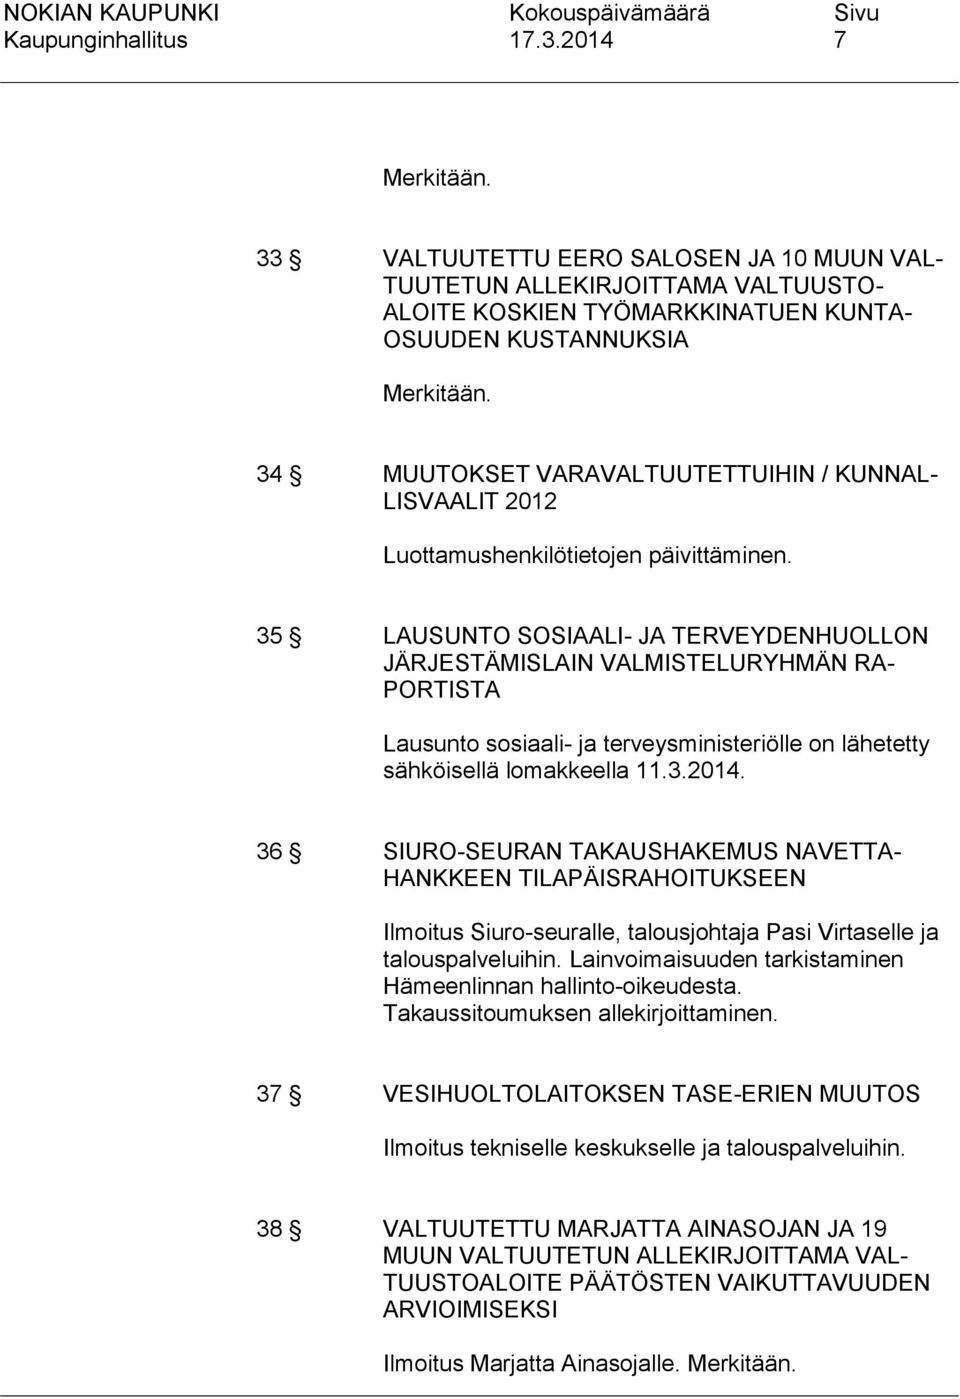 35 LAUSUNTO SOSIAALI- JA TERVEYDENHUOLLON JÄRJESTÄMISLAIN VALMISTELURYHMÄN RA- PORTISTA Lausunto sosiaali- ja terveysministeriölle on lähetetty sähköisellä lomakkeella 11.3.2014.